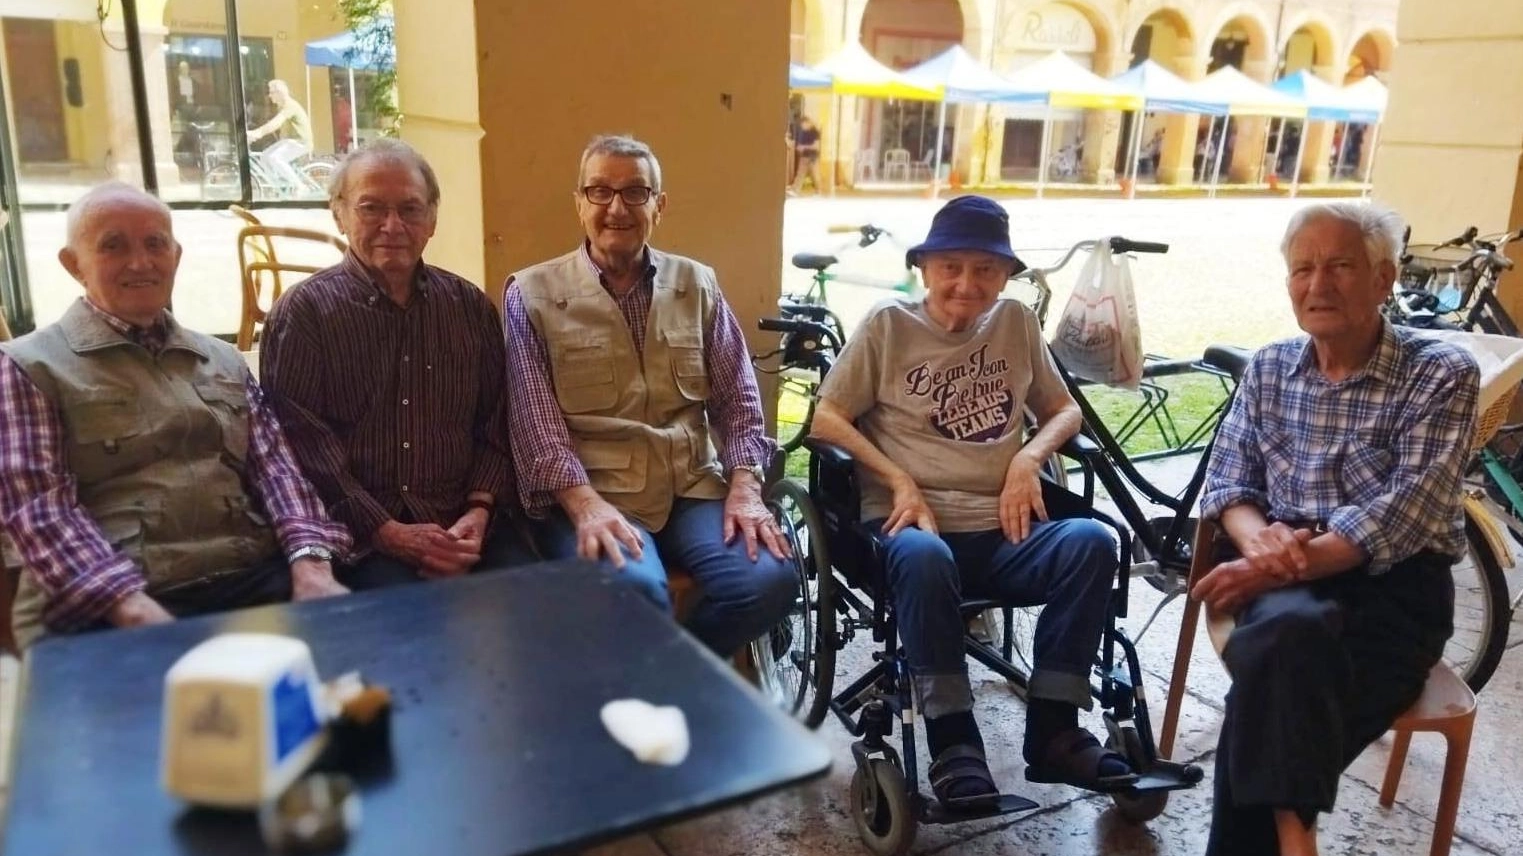 Si incontrarono a scuola nel 1936  Gli ex remigini si rivedono dopo 87 anni